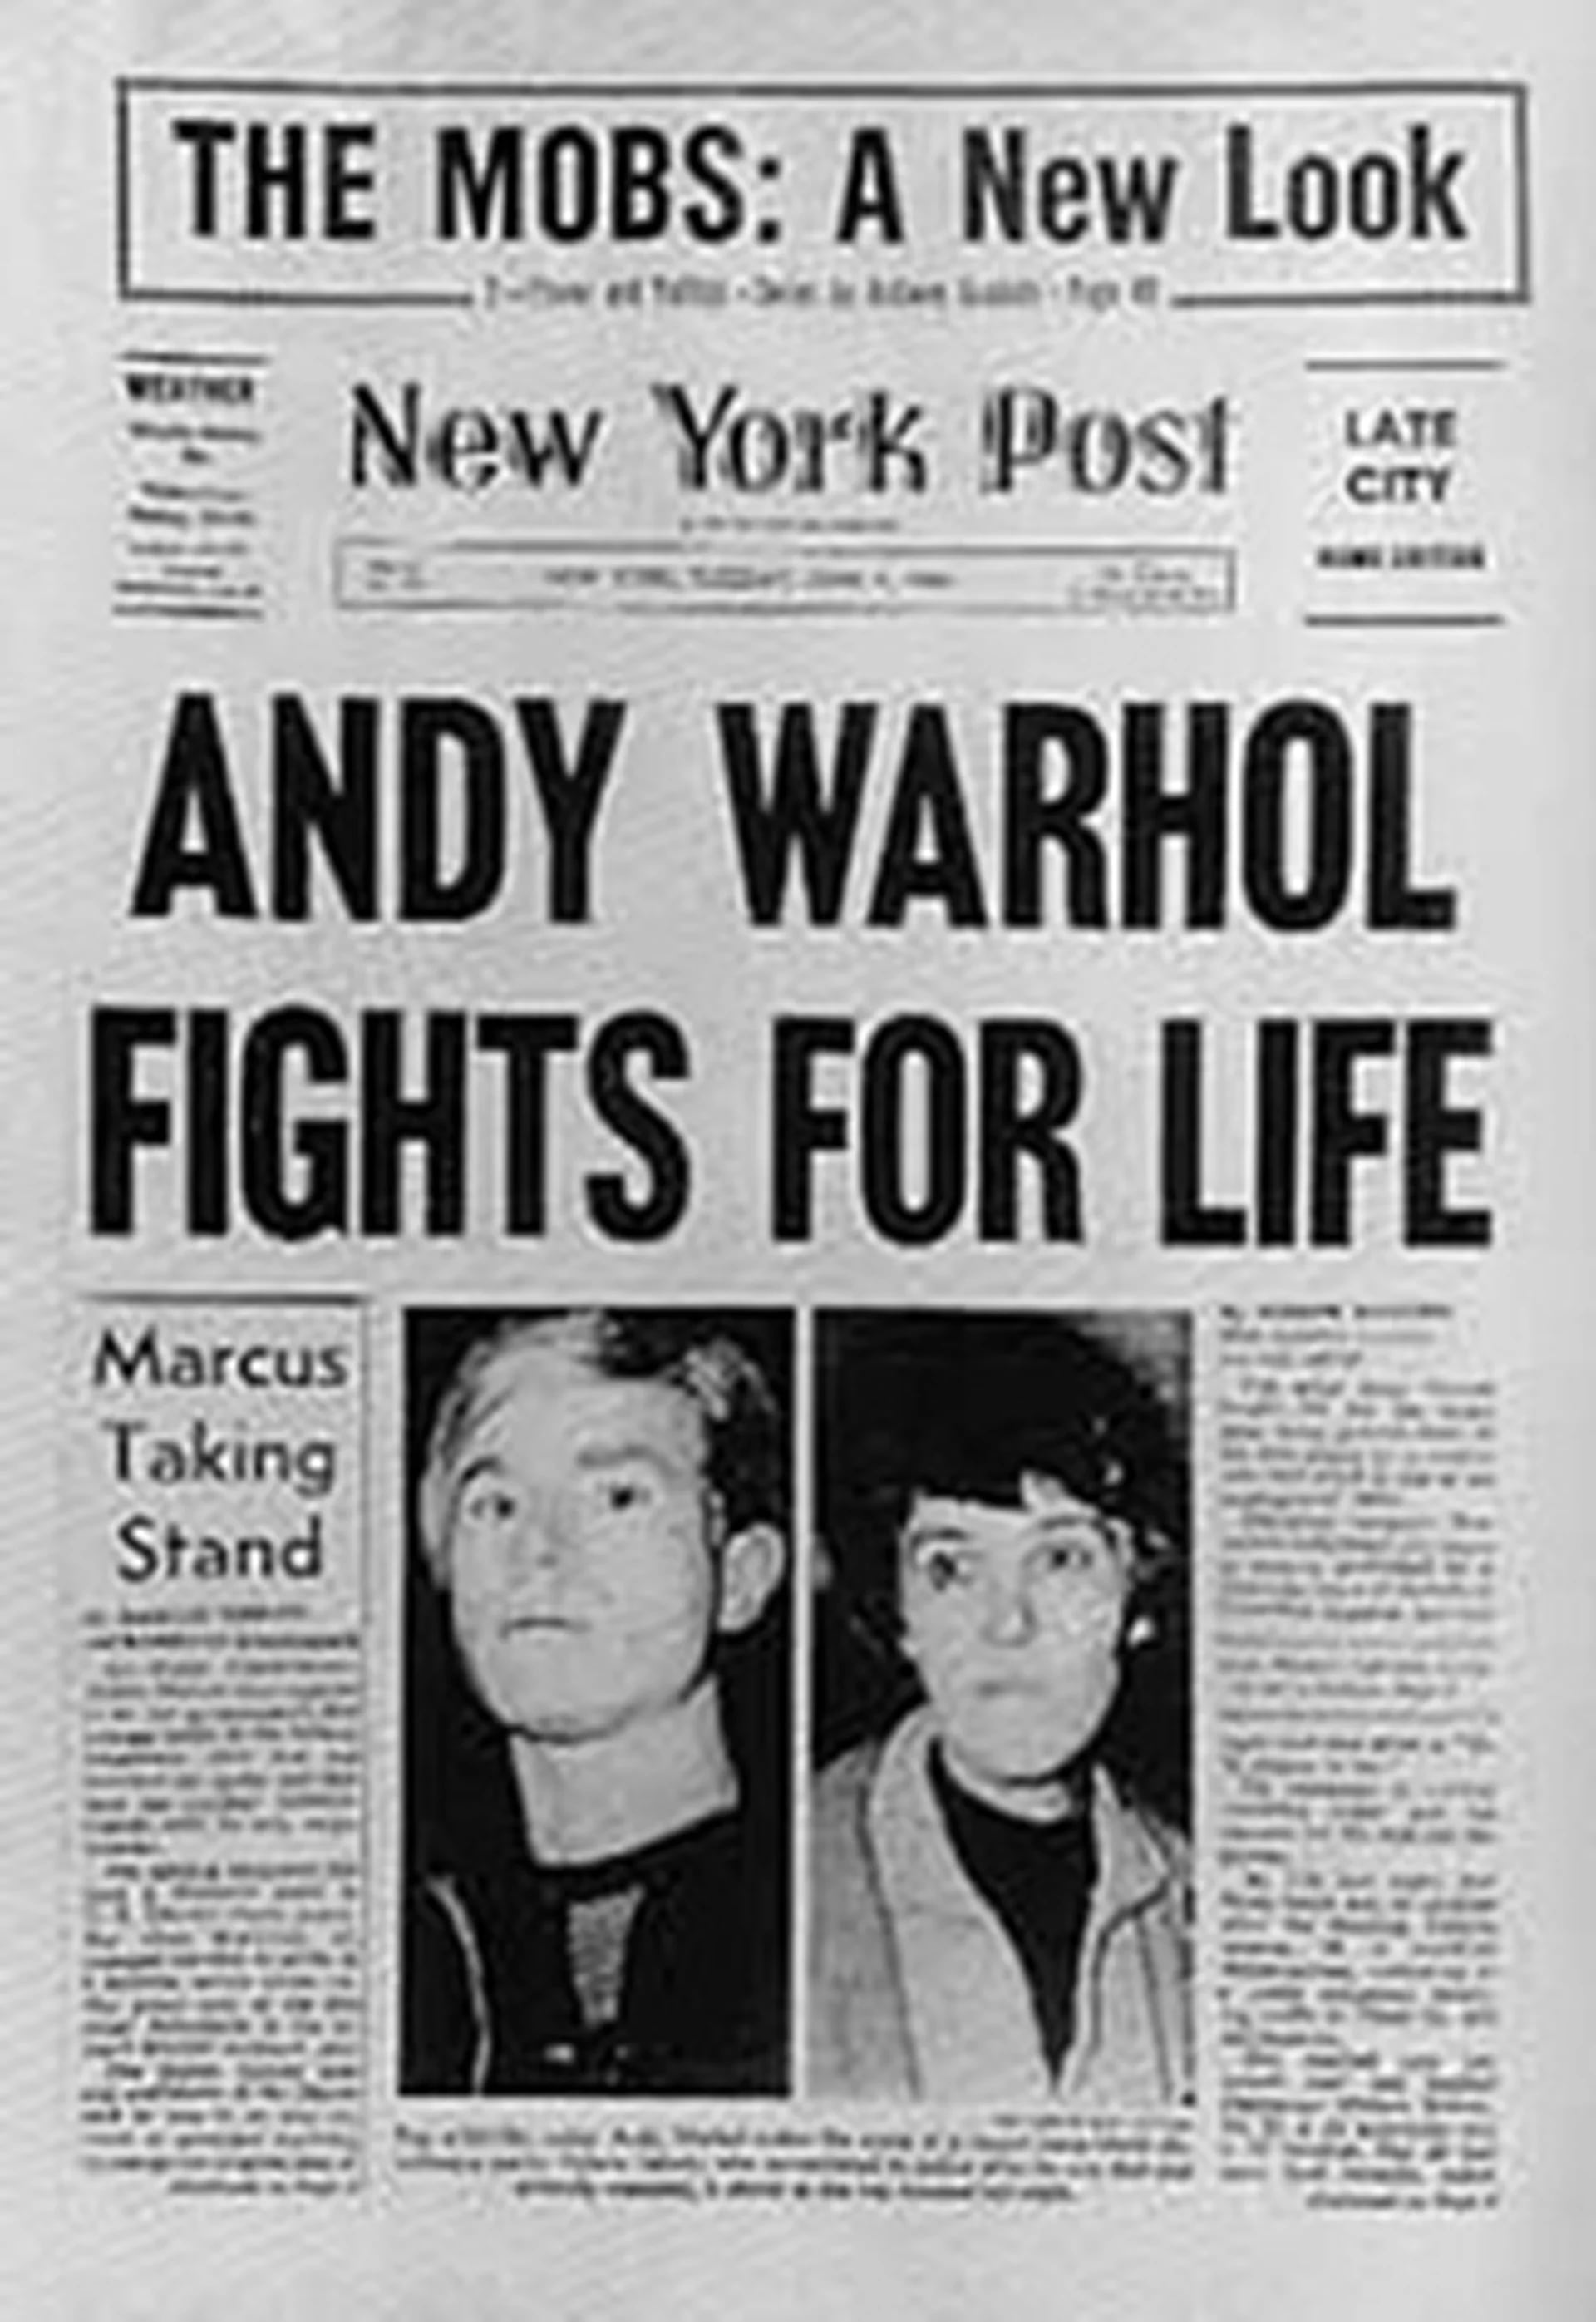 Andy Warhol sobrevivió de milagro al ataque de Valérie Solanas